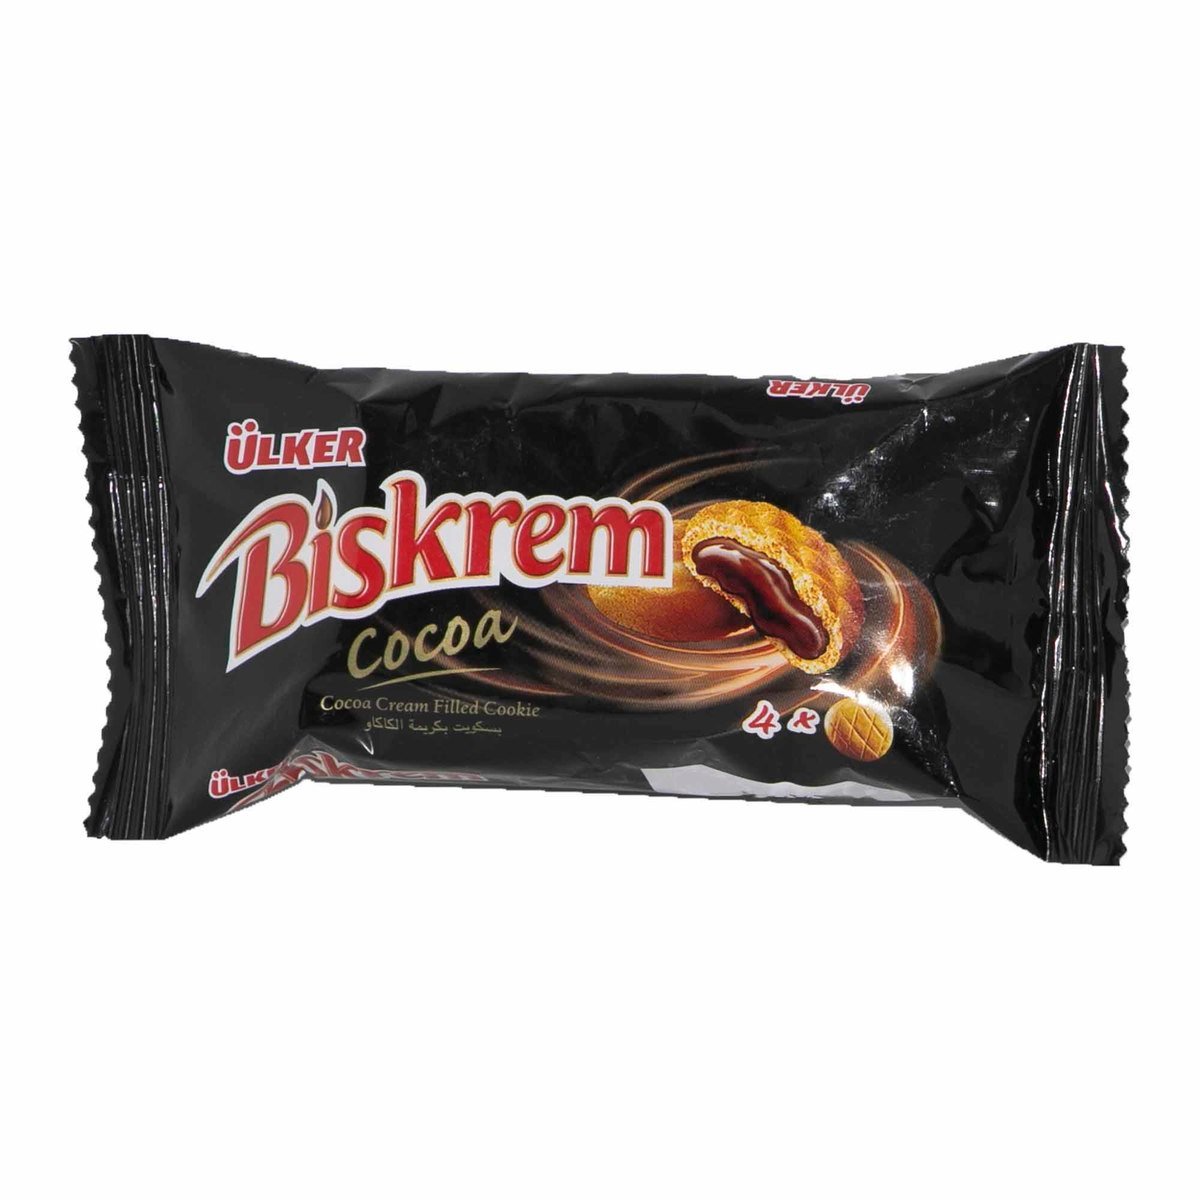 Ulker Biskrem Cocoa Cream Filled Cookie 12 x 36 g